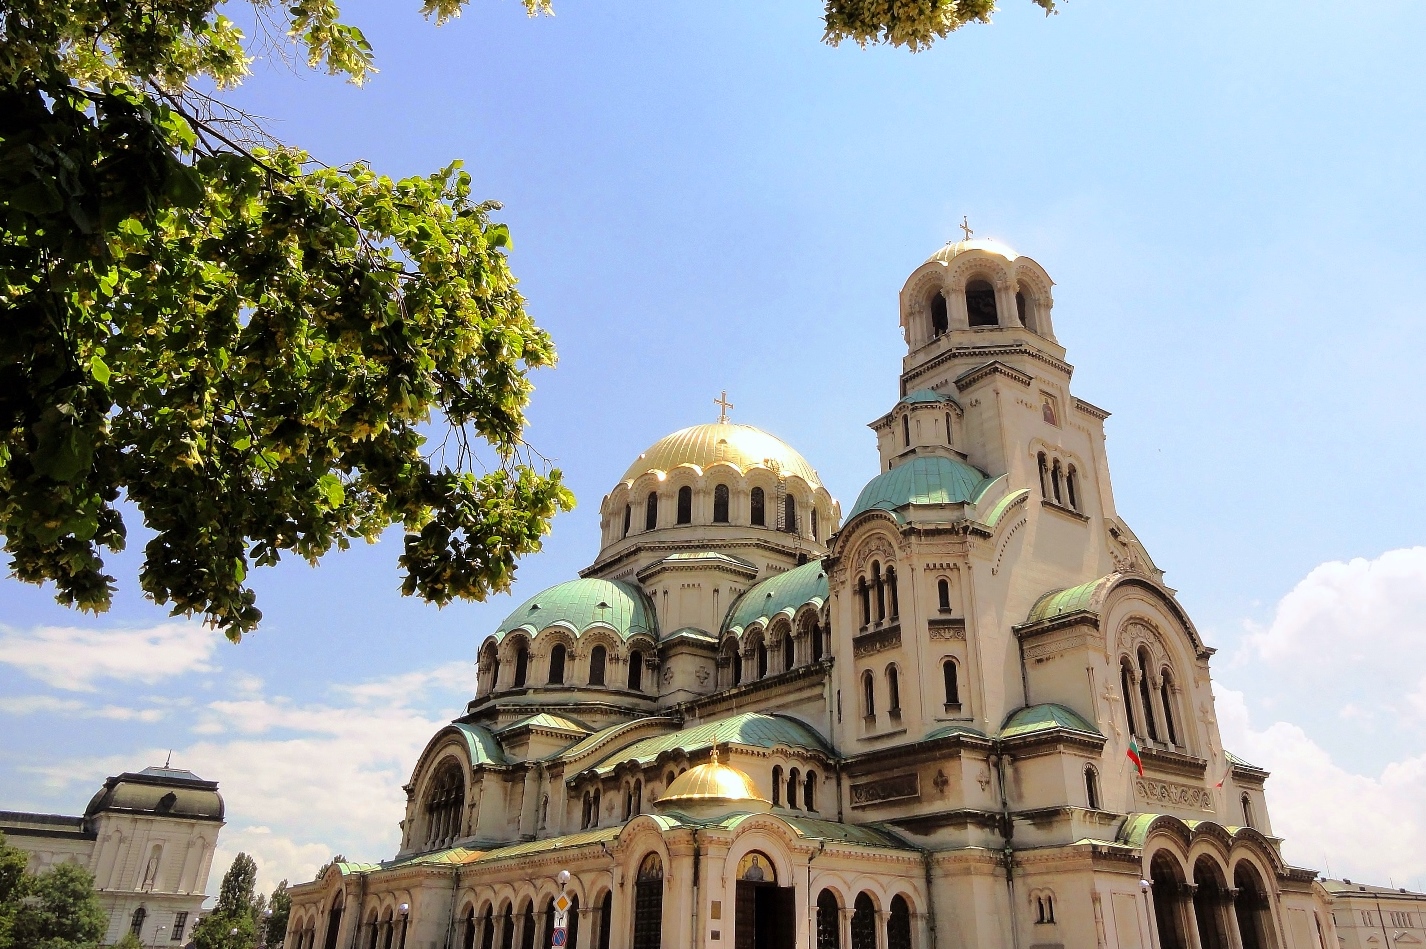 Alexander Nevsky Cathedral sofia